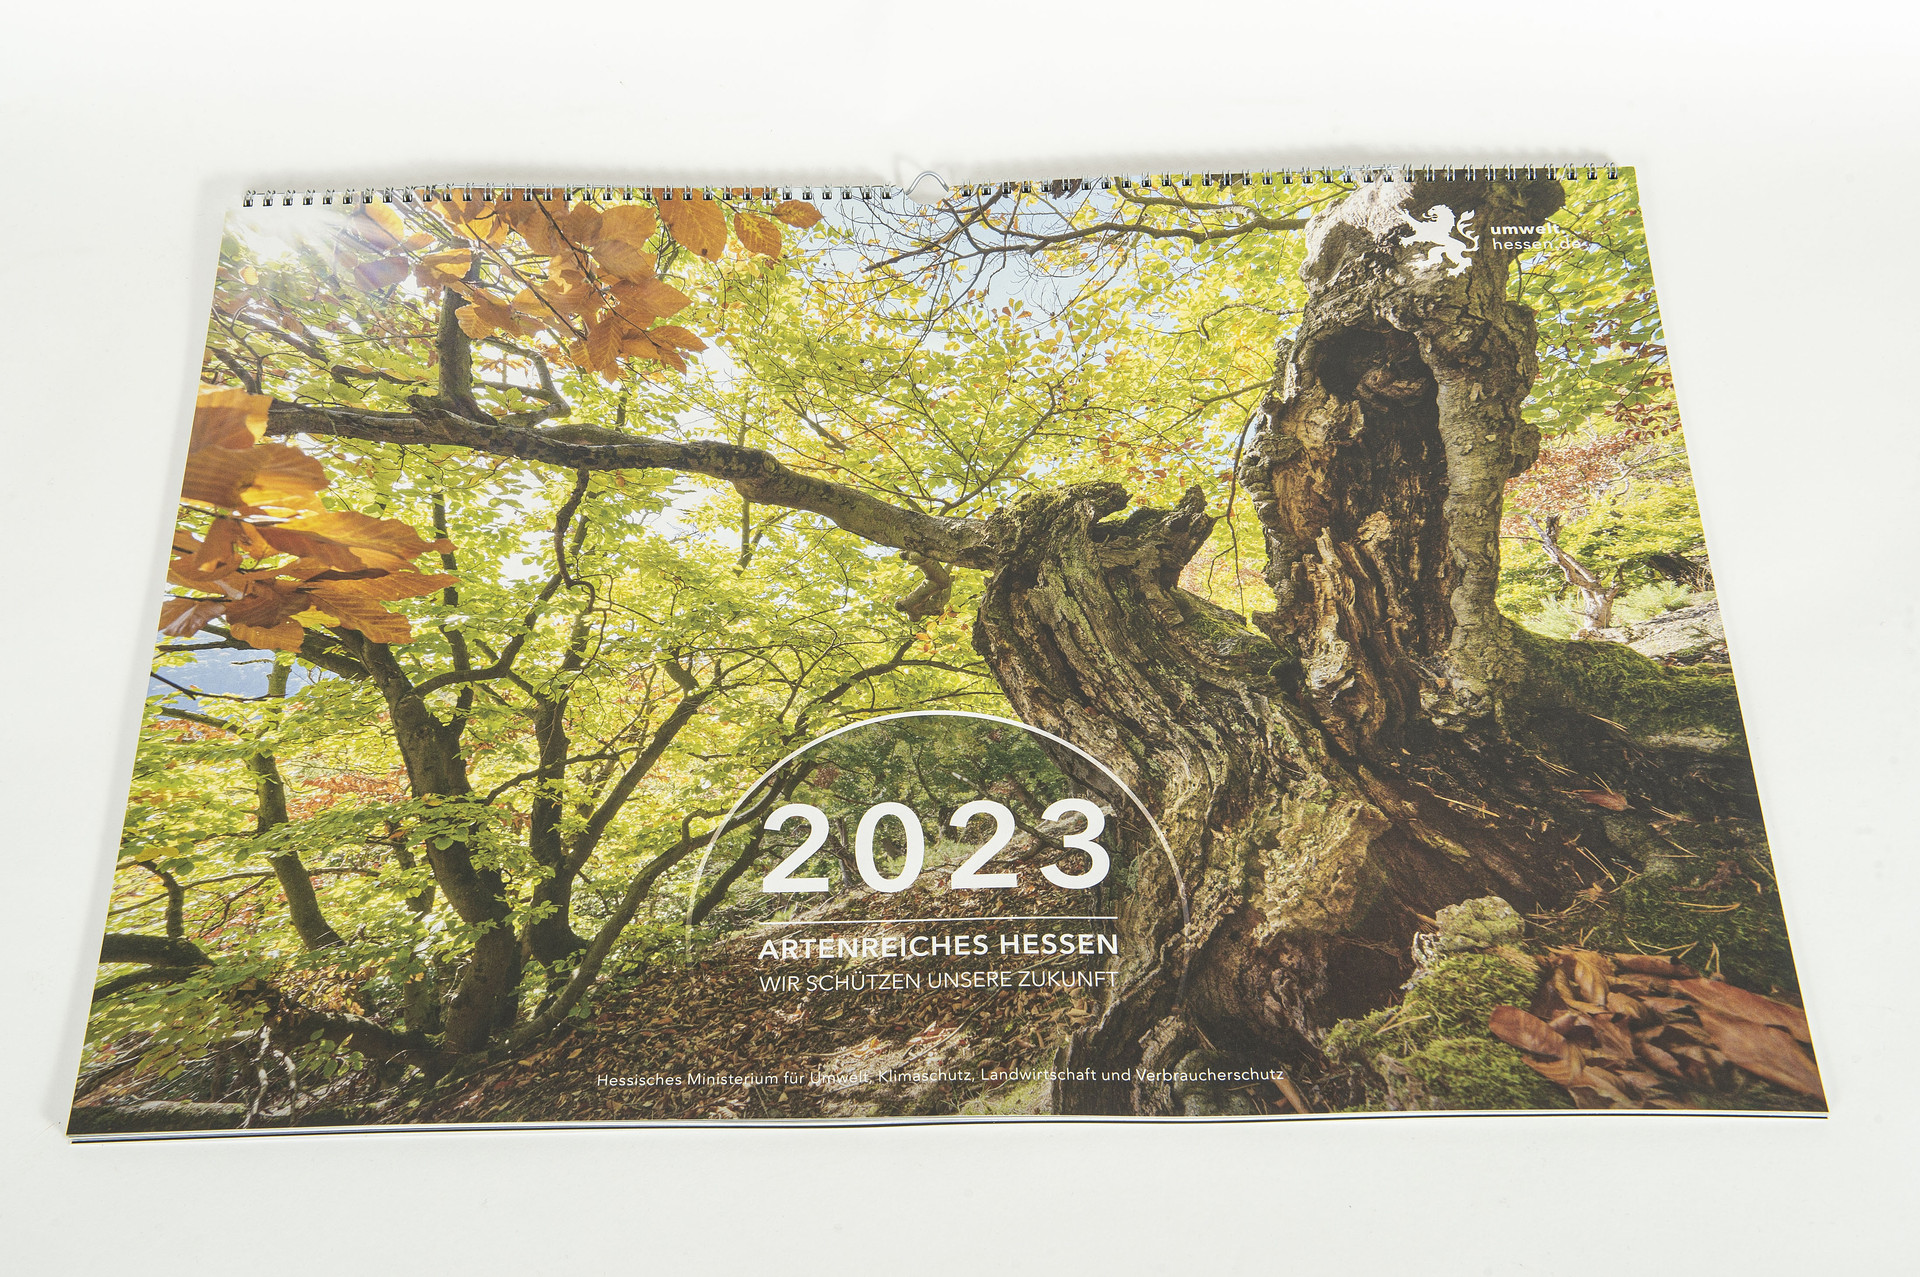 Kalendercover mit einem Baum-Motiv. Der Baum, mit stark verwachsenem Stamm, ist von schräg unten Fotografiert. Oben sieht man durch ein orange-hellgrün gefärbtes Blätterdach den Himmel durchscheinen. Auf dem Cover steht "2023 Artenreiches Hessen Wir schützen unsere Zukunft".  